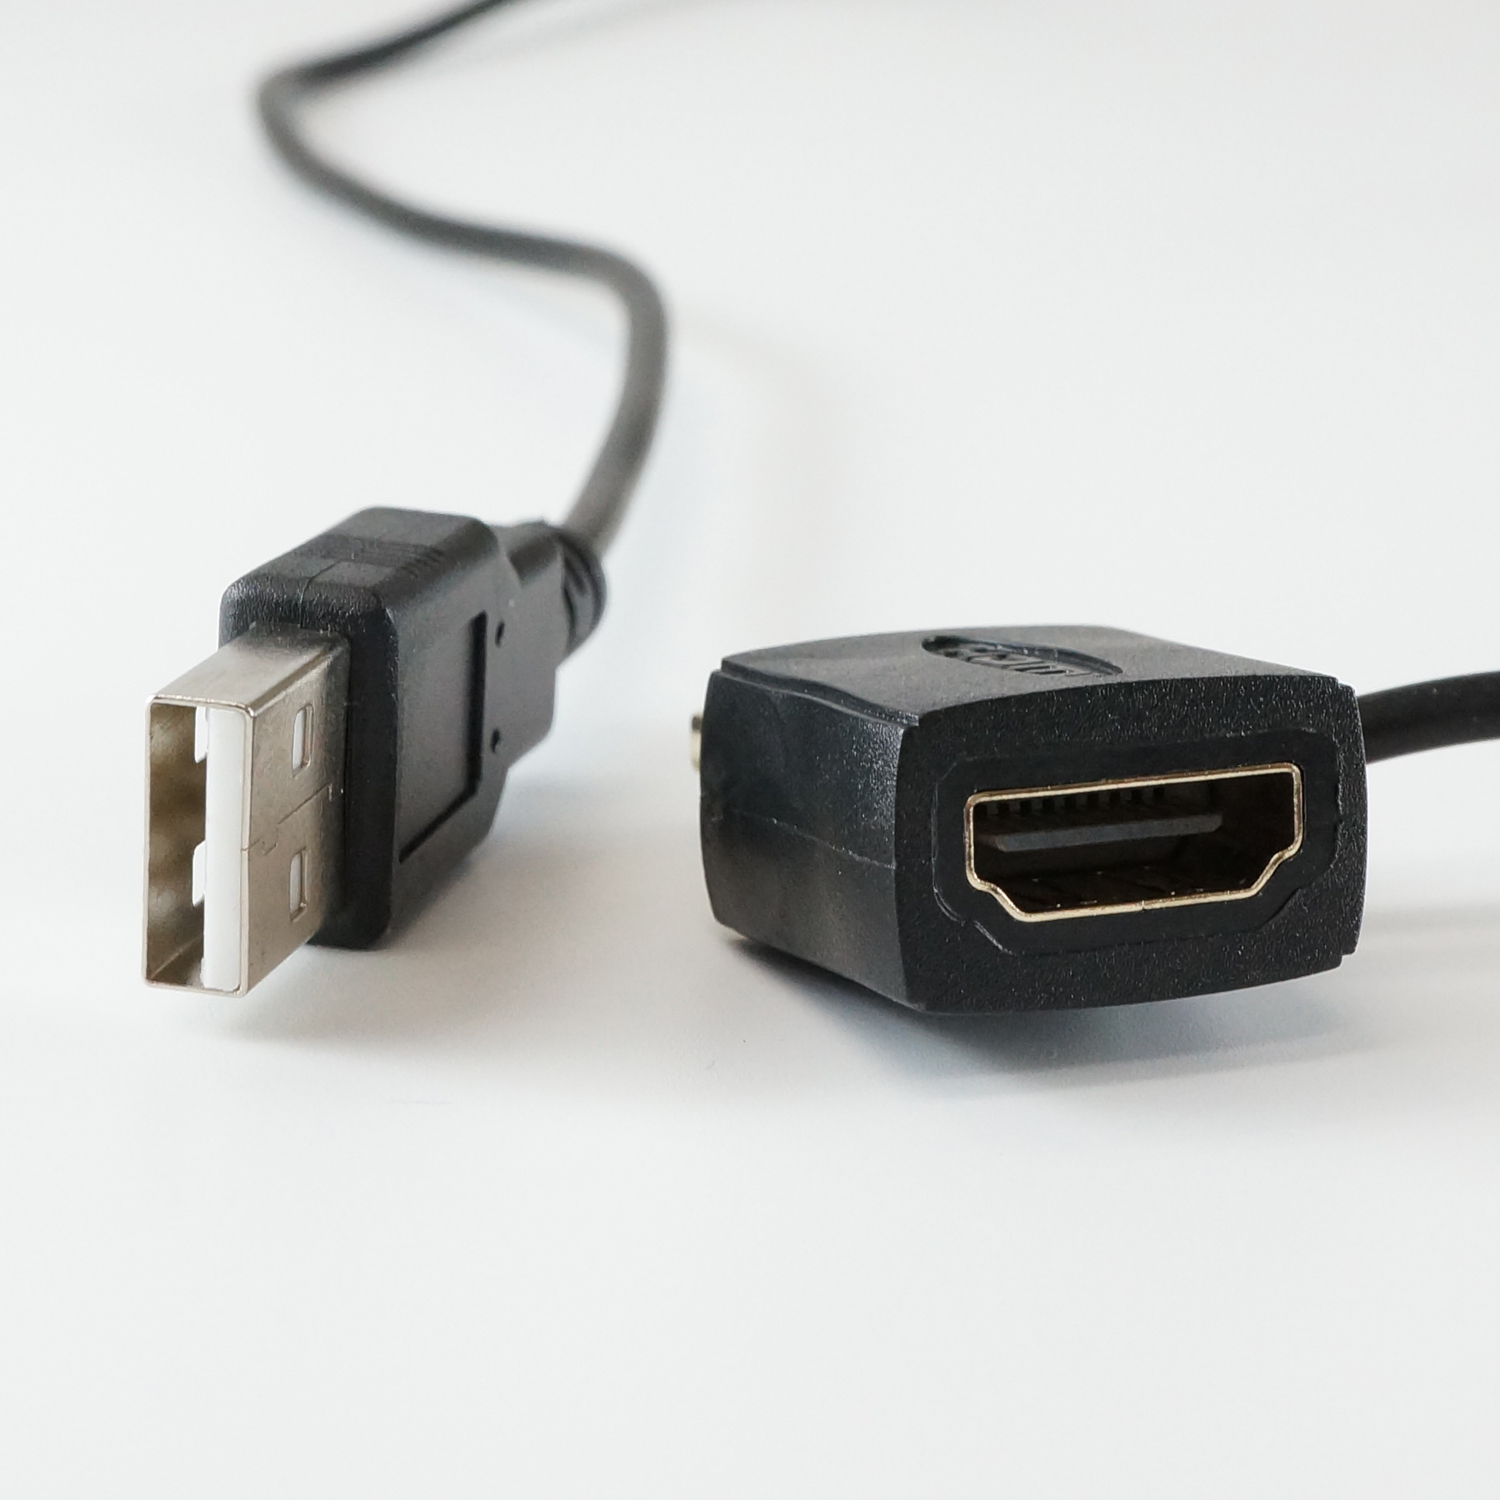 ホーリックダイレクト / HDMI-USB電源アダプタ HDMI-138USB